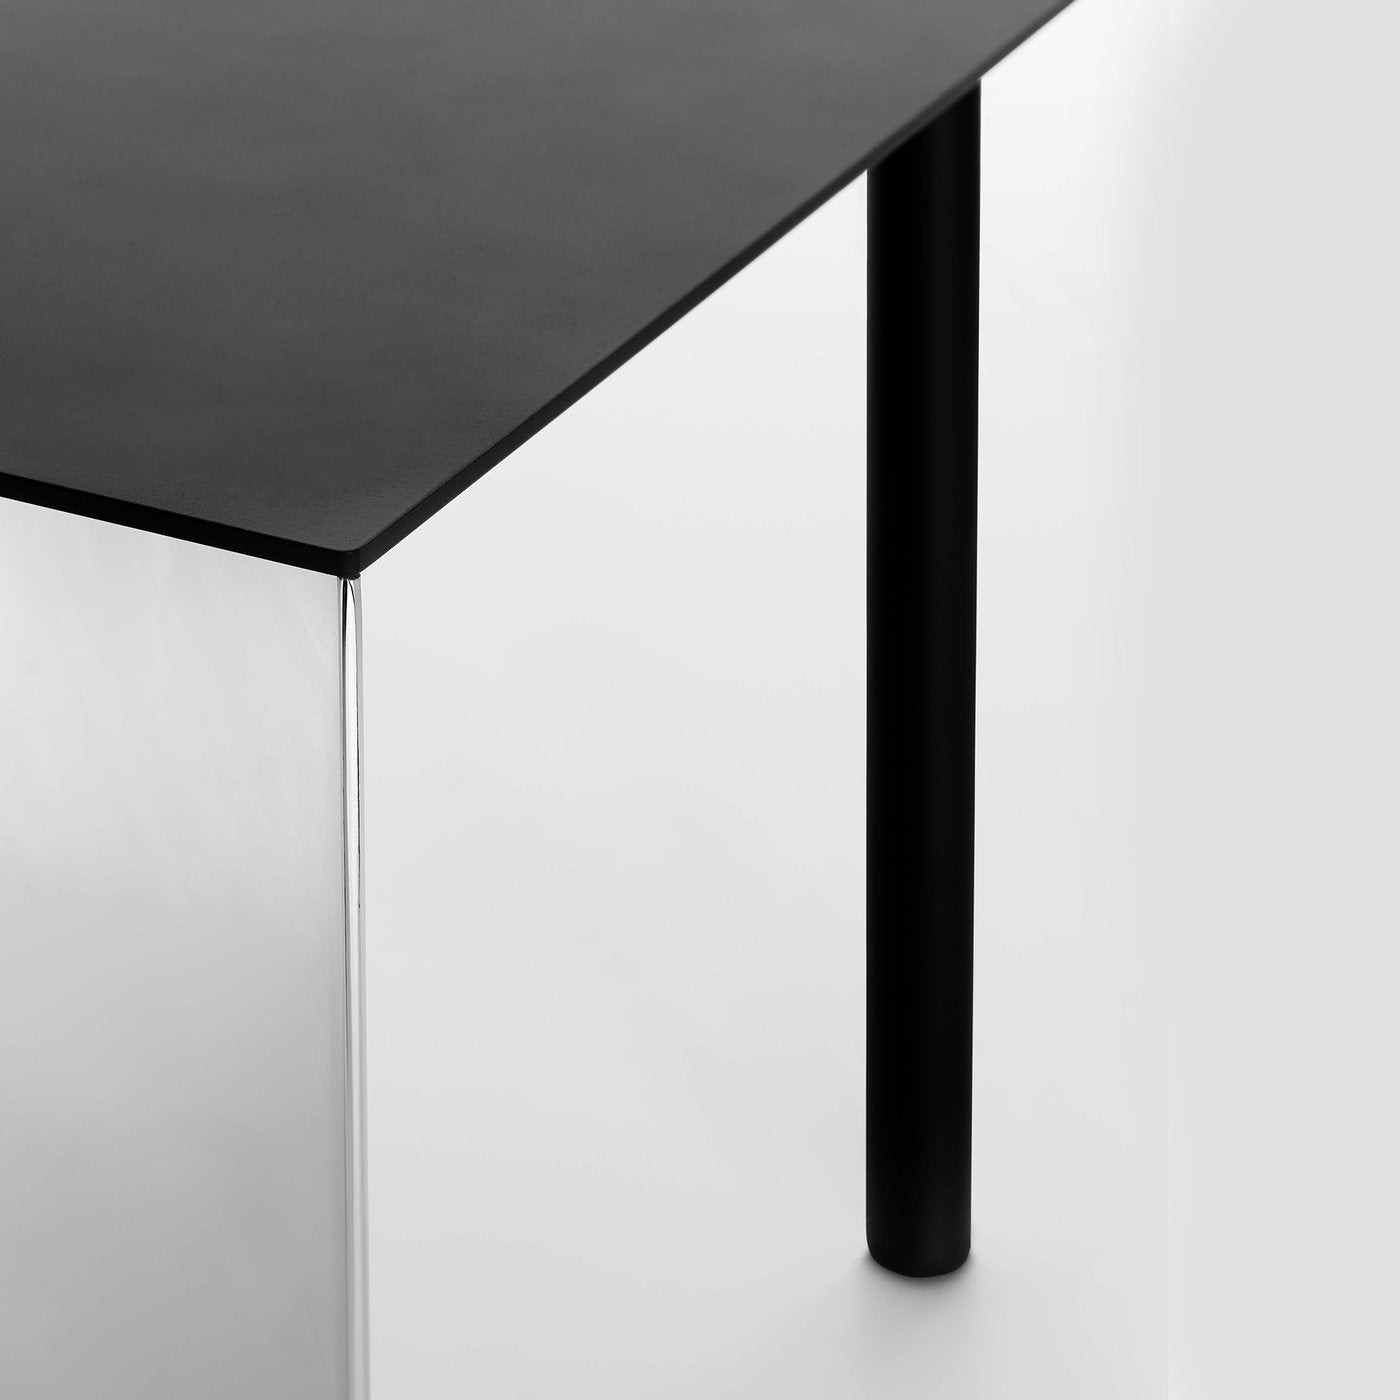 Piatto Low Square Table - Alternative view 2